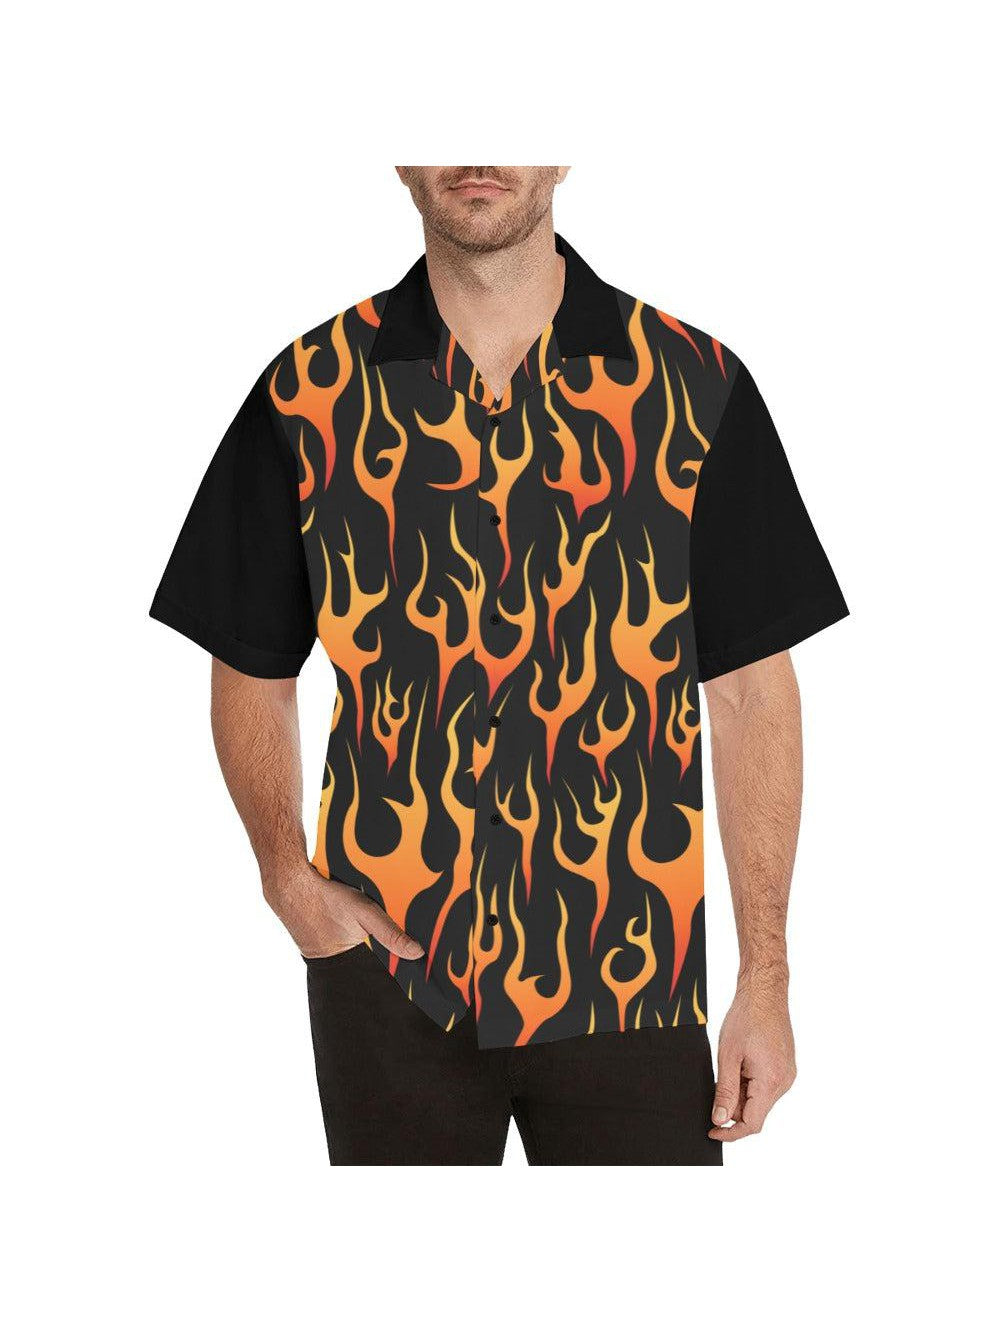 Flames Button Up Shirt